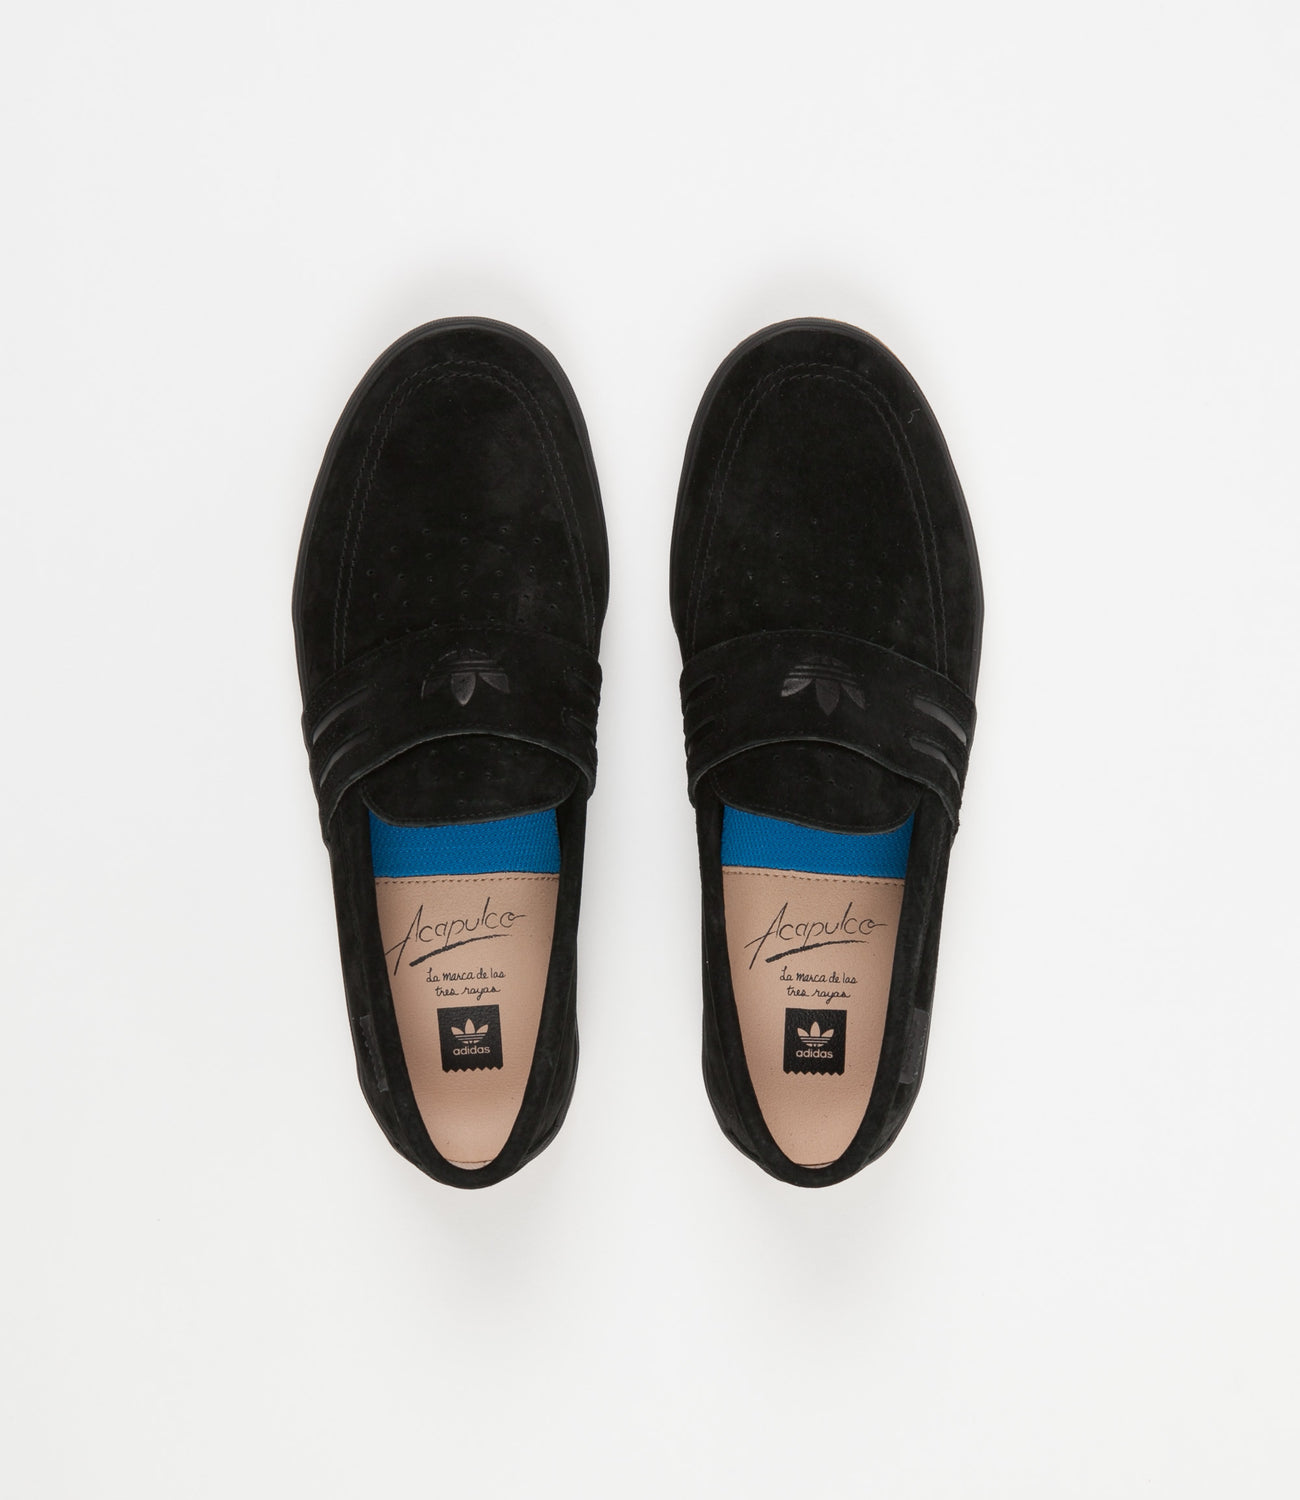 Shoes - Core Black / Core Black / | Flatspot